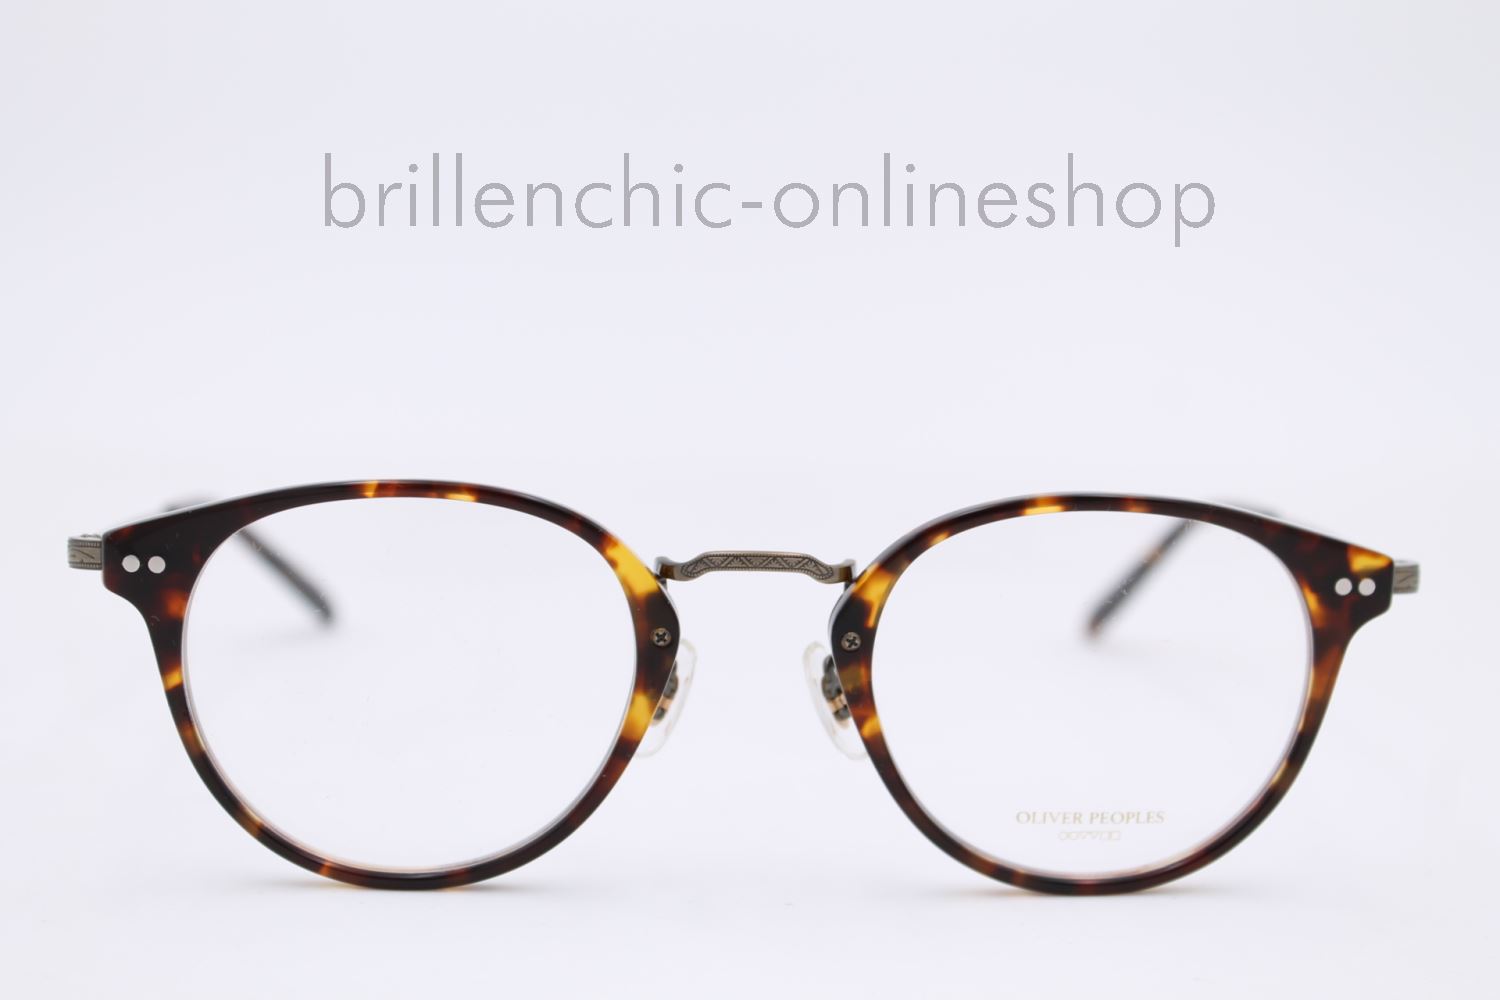 Brillenchic - onlineshop Berlin Ihr starker Partner für exklusive Brillen  online kaufen/OLIVER PEOPLES CODEE OV 5423U 5423 1654 exklusiv im  Brillenchic-Onlineshop